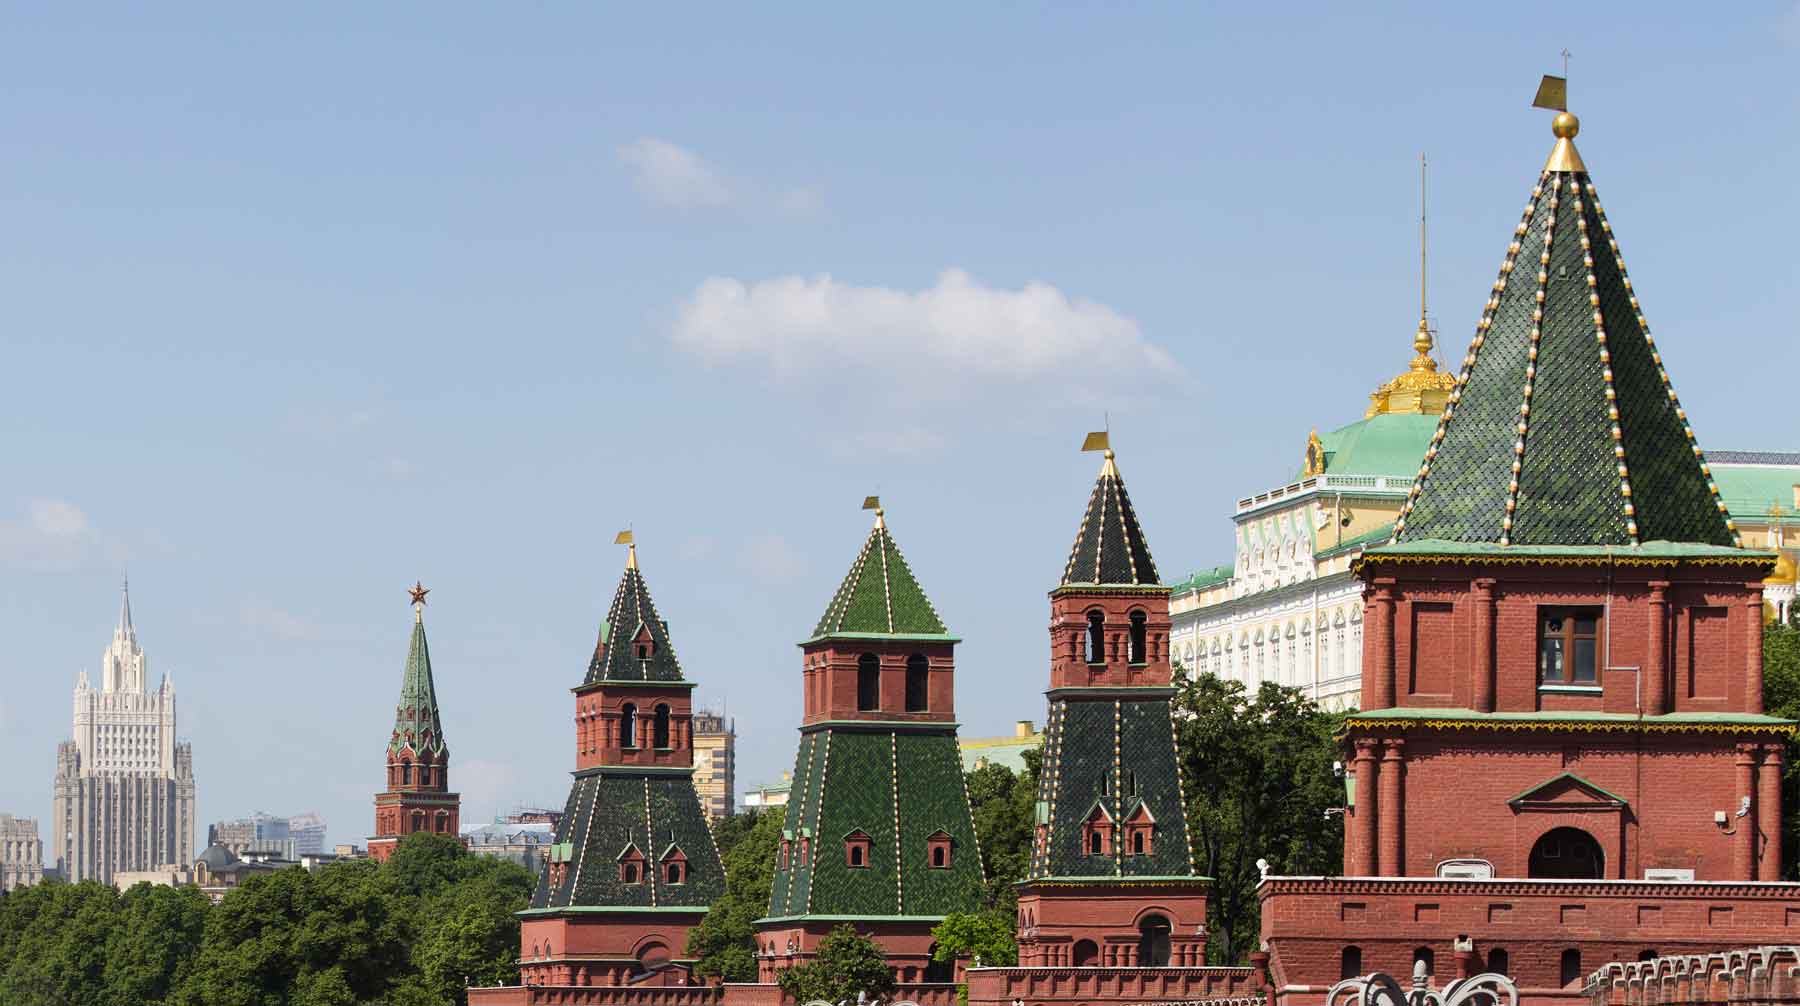 Тг кремлевский. Зеленый Кремль. Кремлевские зеленые башни. Верхушка Кремля. Крыша Кремля.